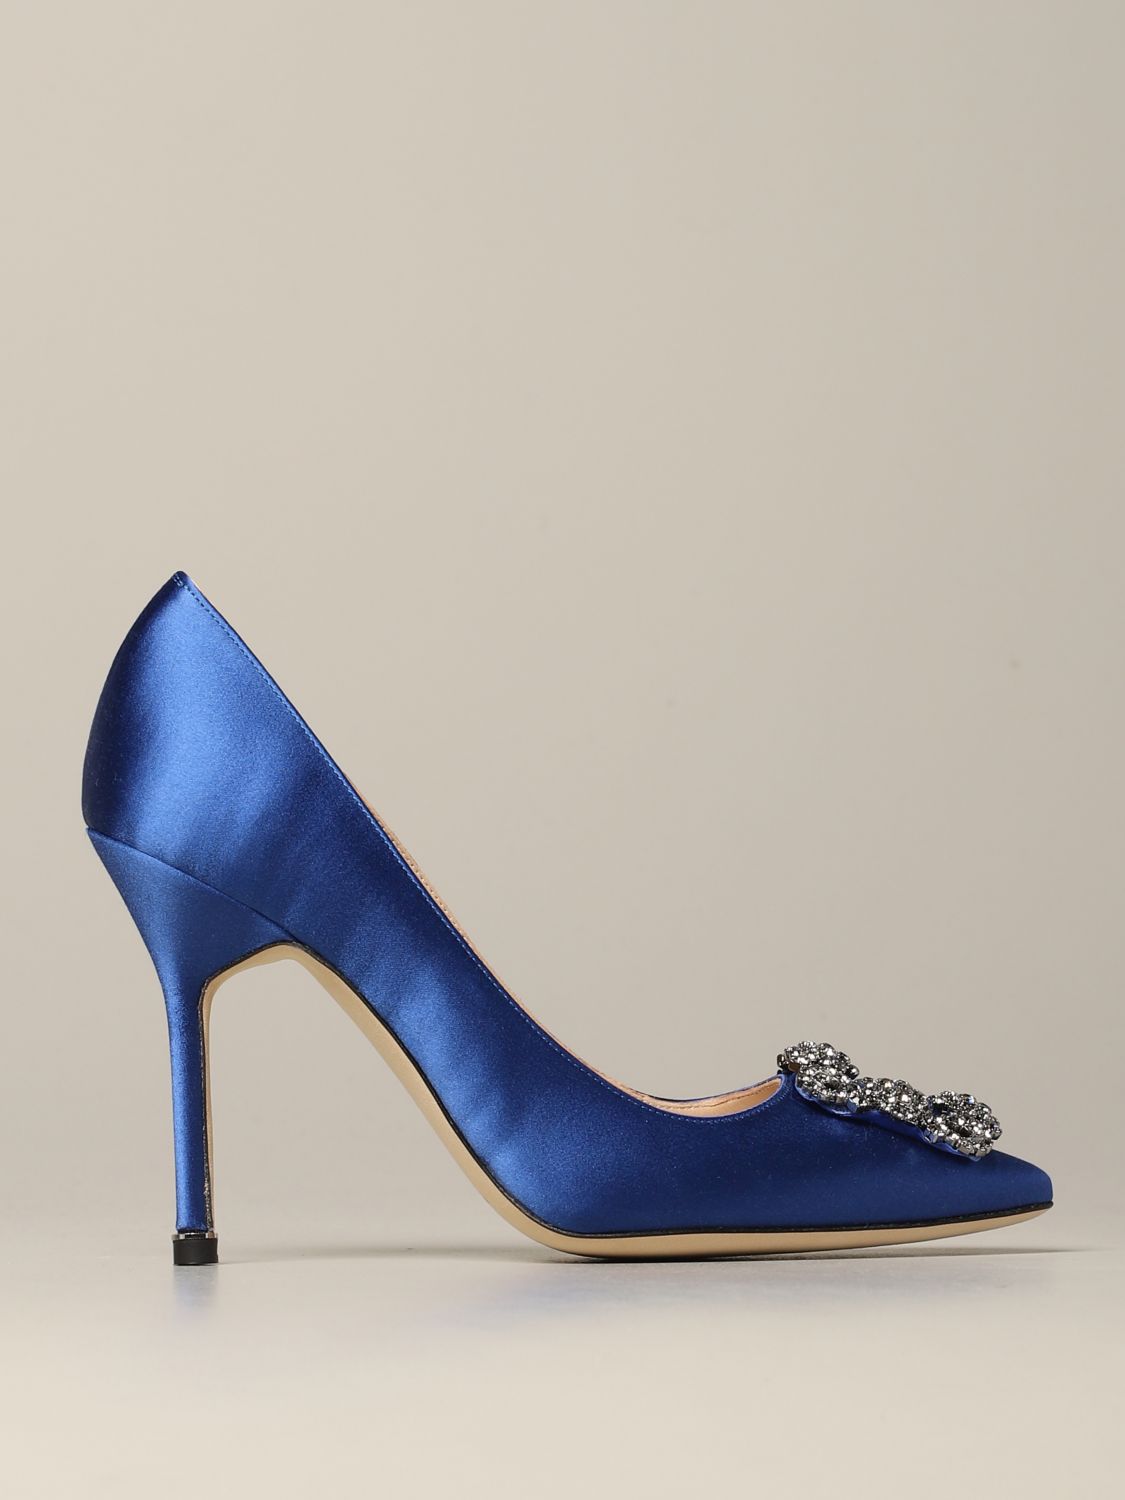 blue court shoes